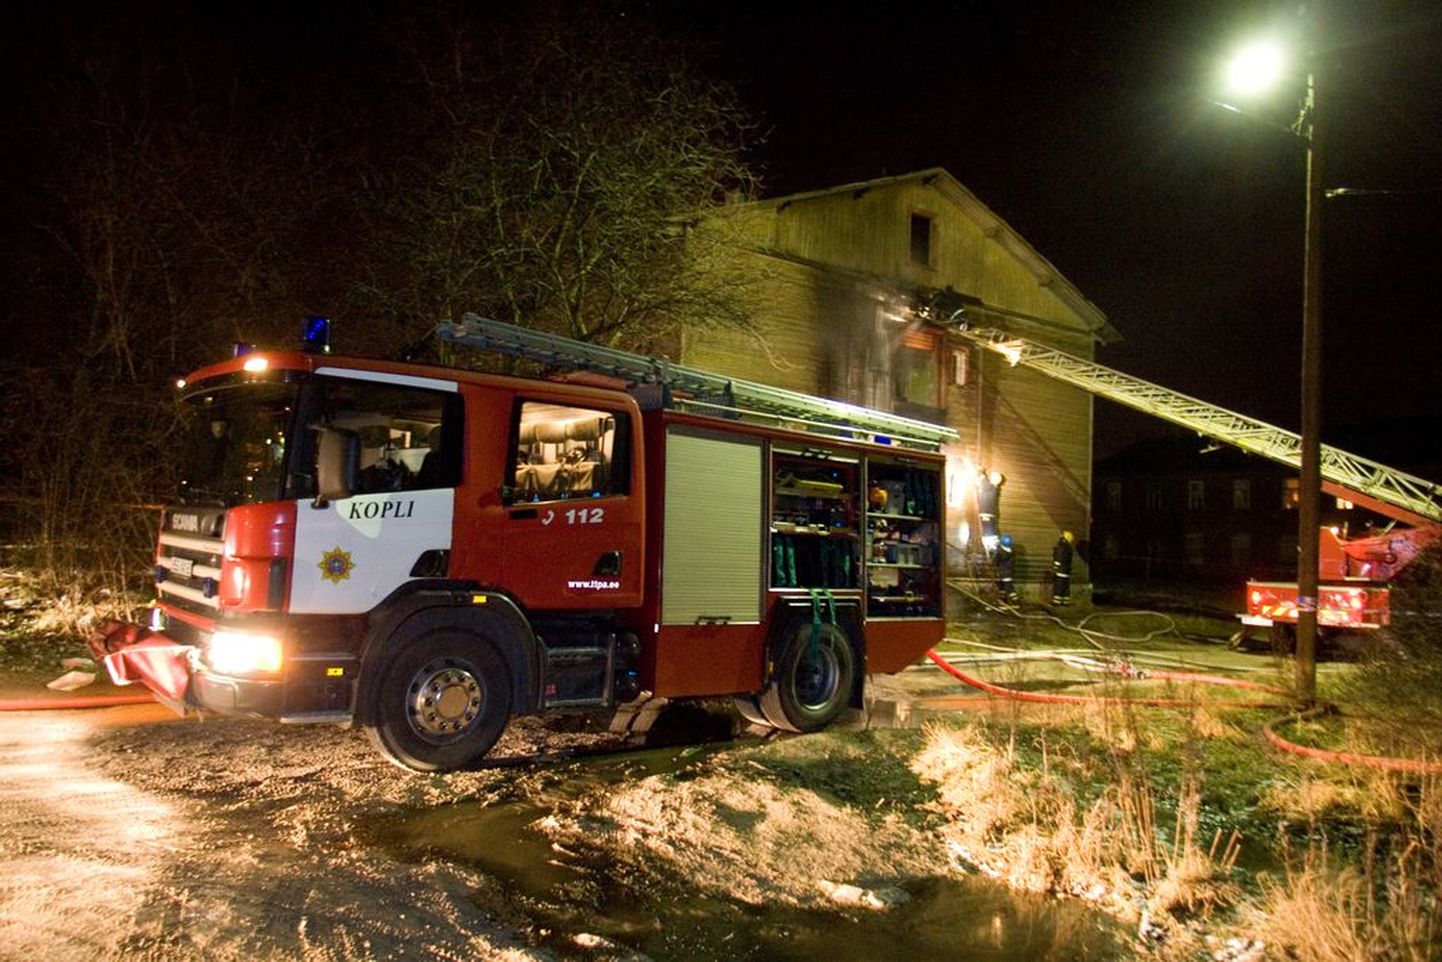 Kopli 5. liini majas hukkus kaks naist, tuletõrjujad päästsid kaks meest